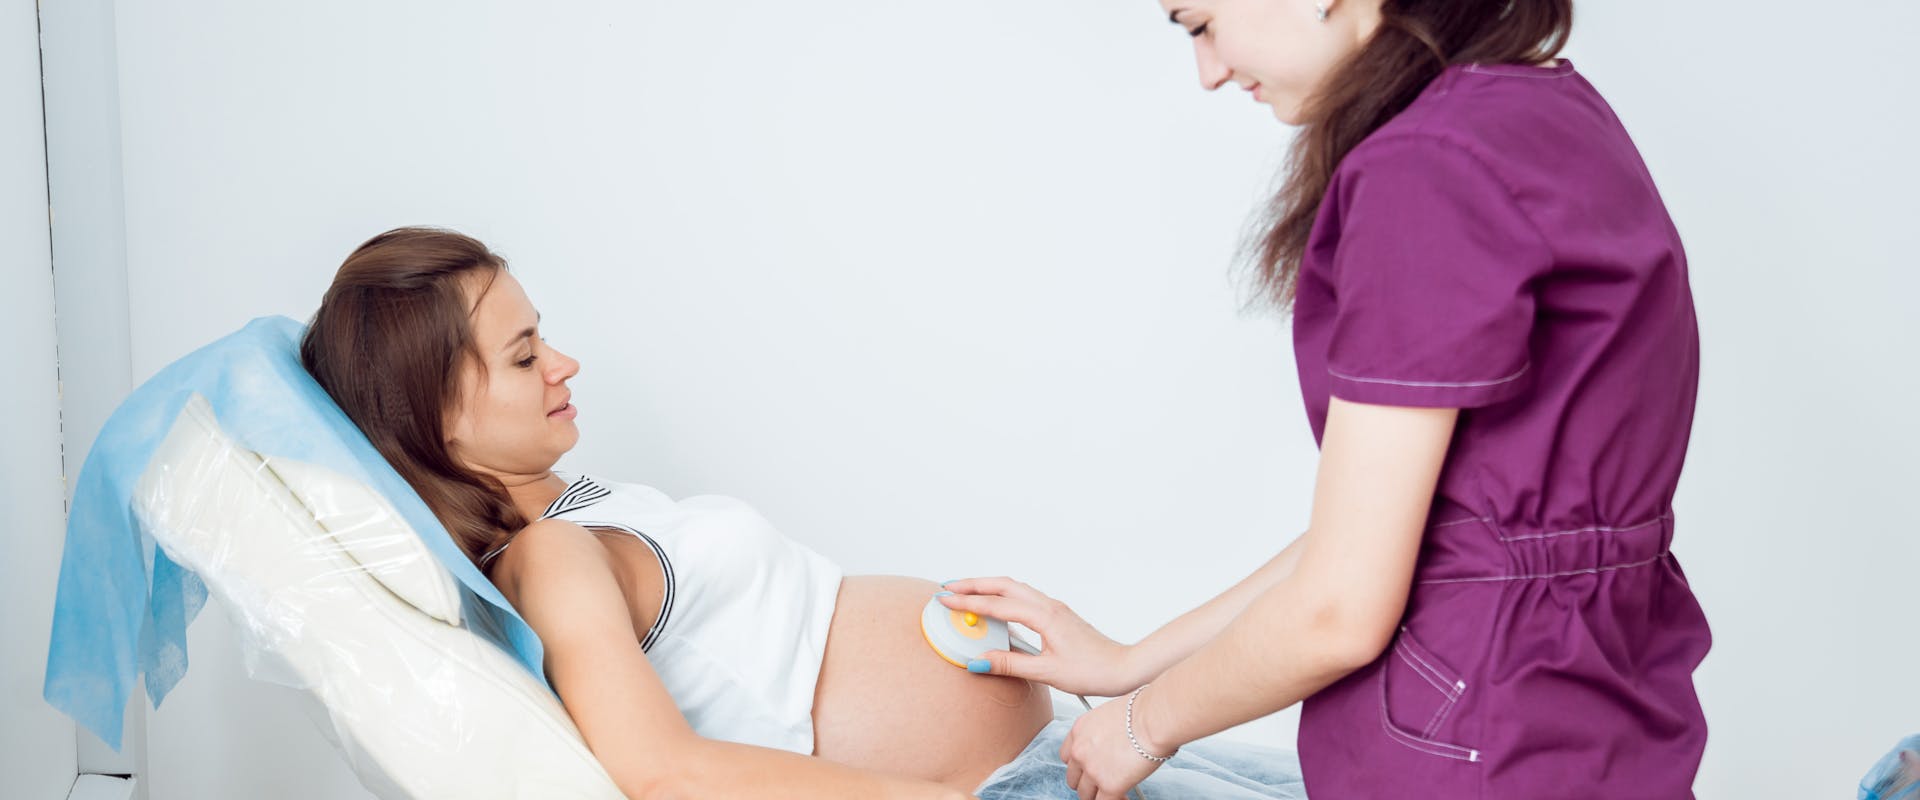 Femme enceinte bénéficiant d'un contrôle électrocardiographique pour son bébé dans le cadre d'un monitoring fœtal.